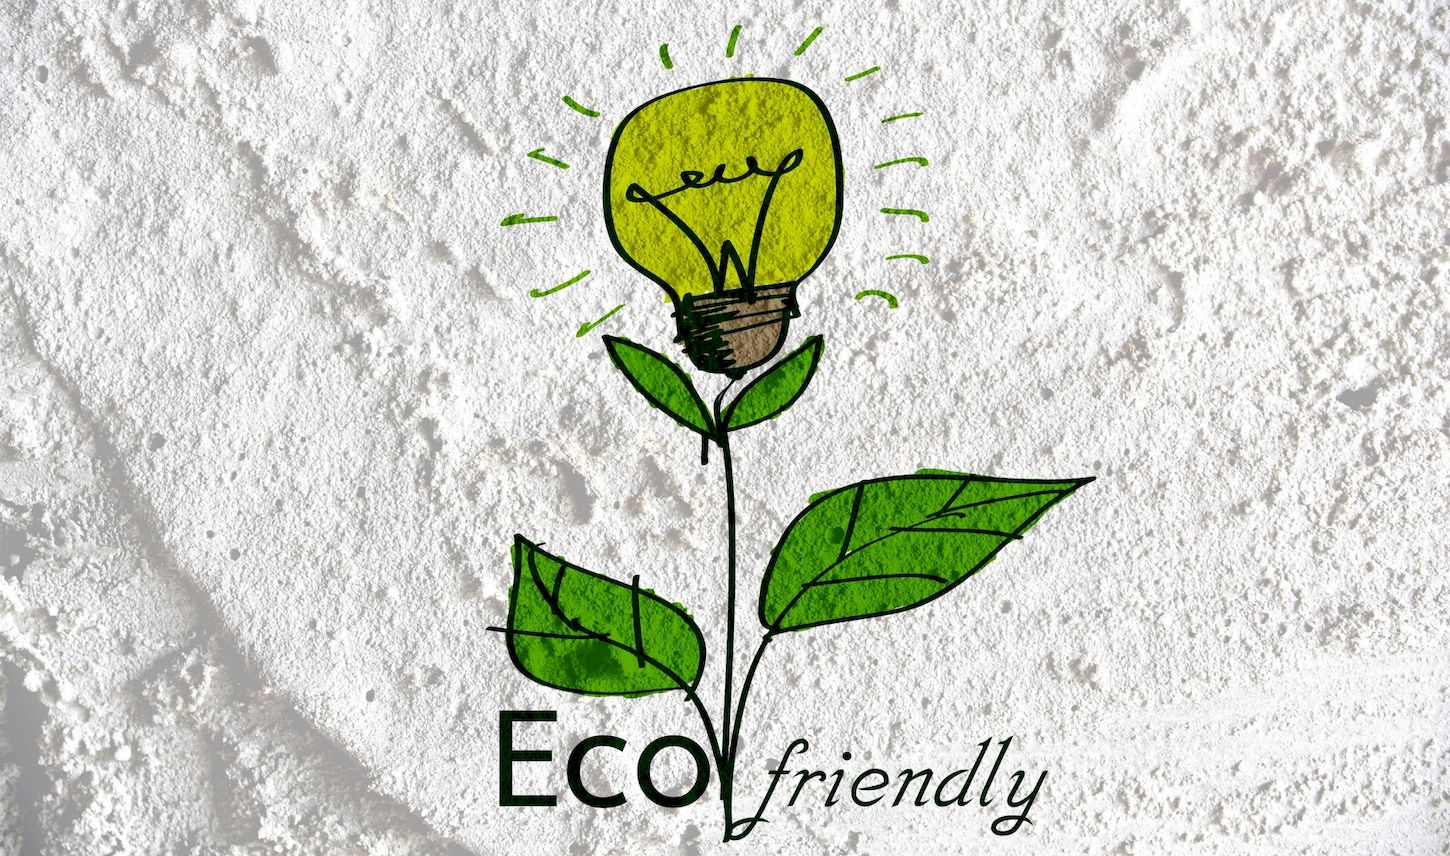 6 de cada 10 consumidores compran de manera más ecológica, sostenible o ética desde la pandemia